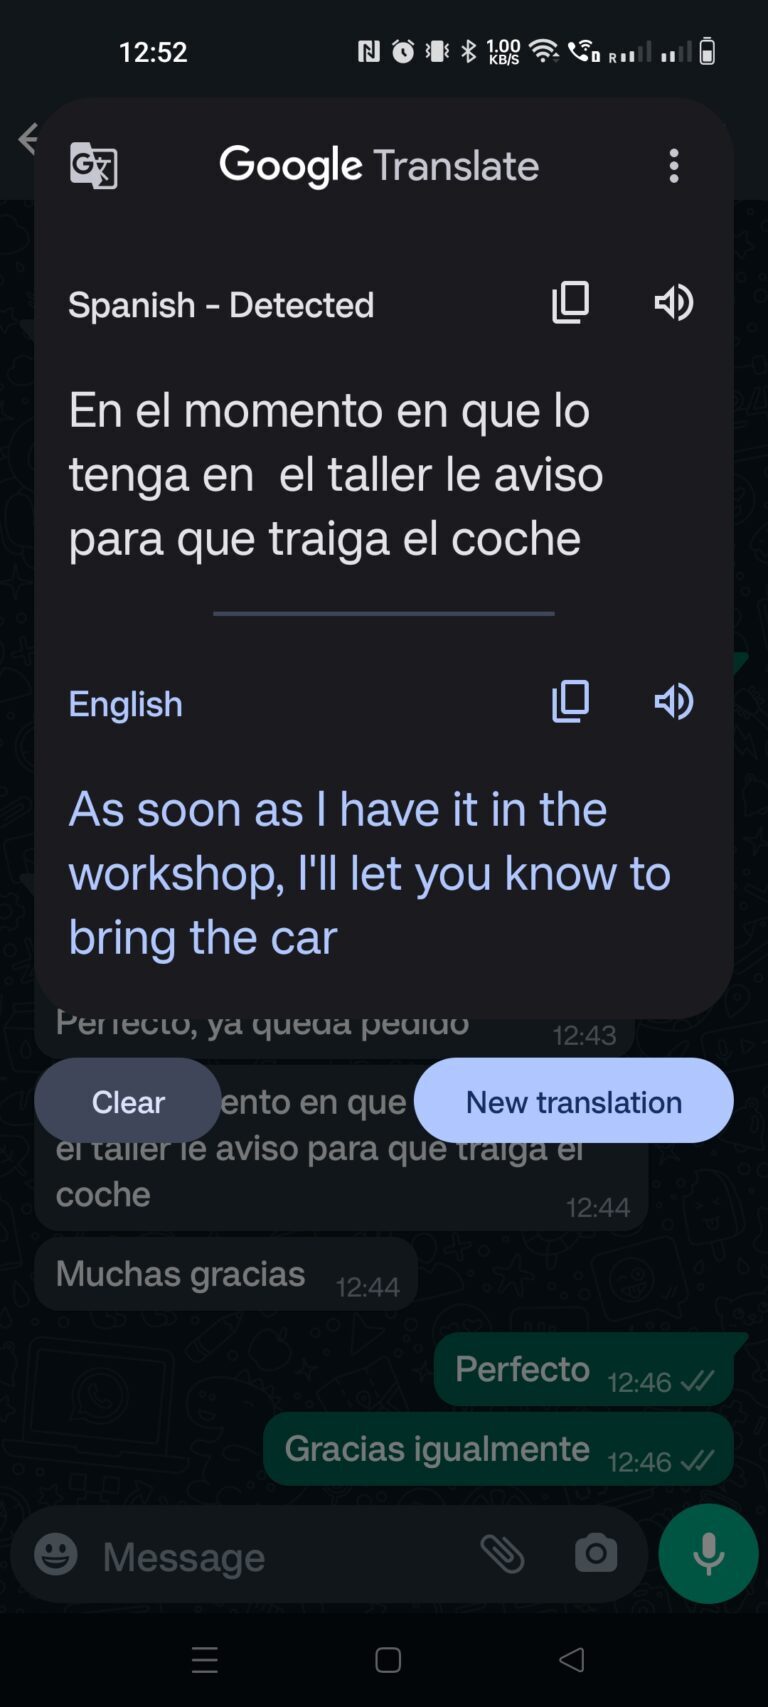 Beispiel - Übersetzung einer eingehenden Nachricht direkt in in WhatsApp